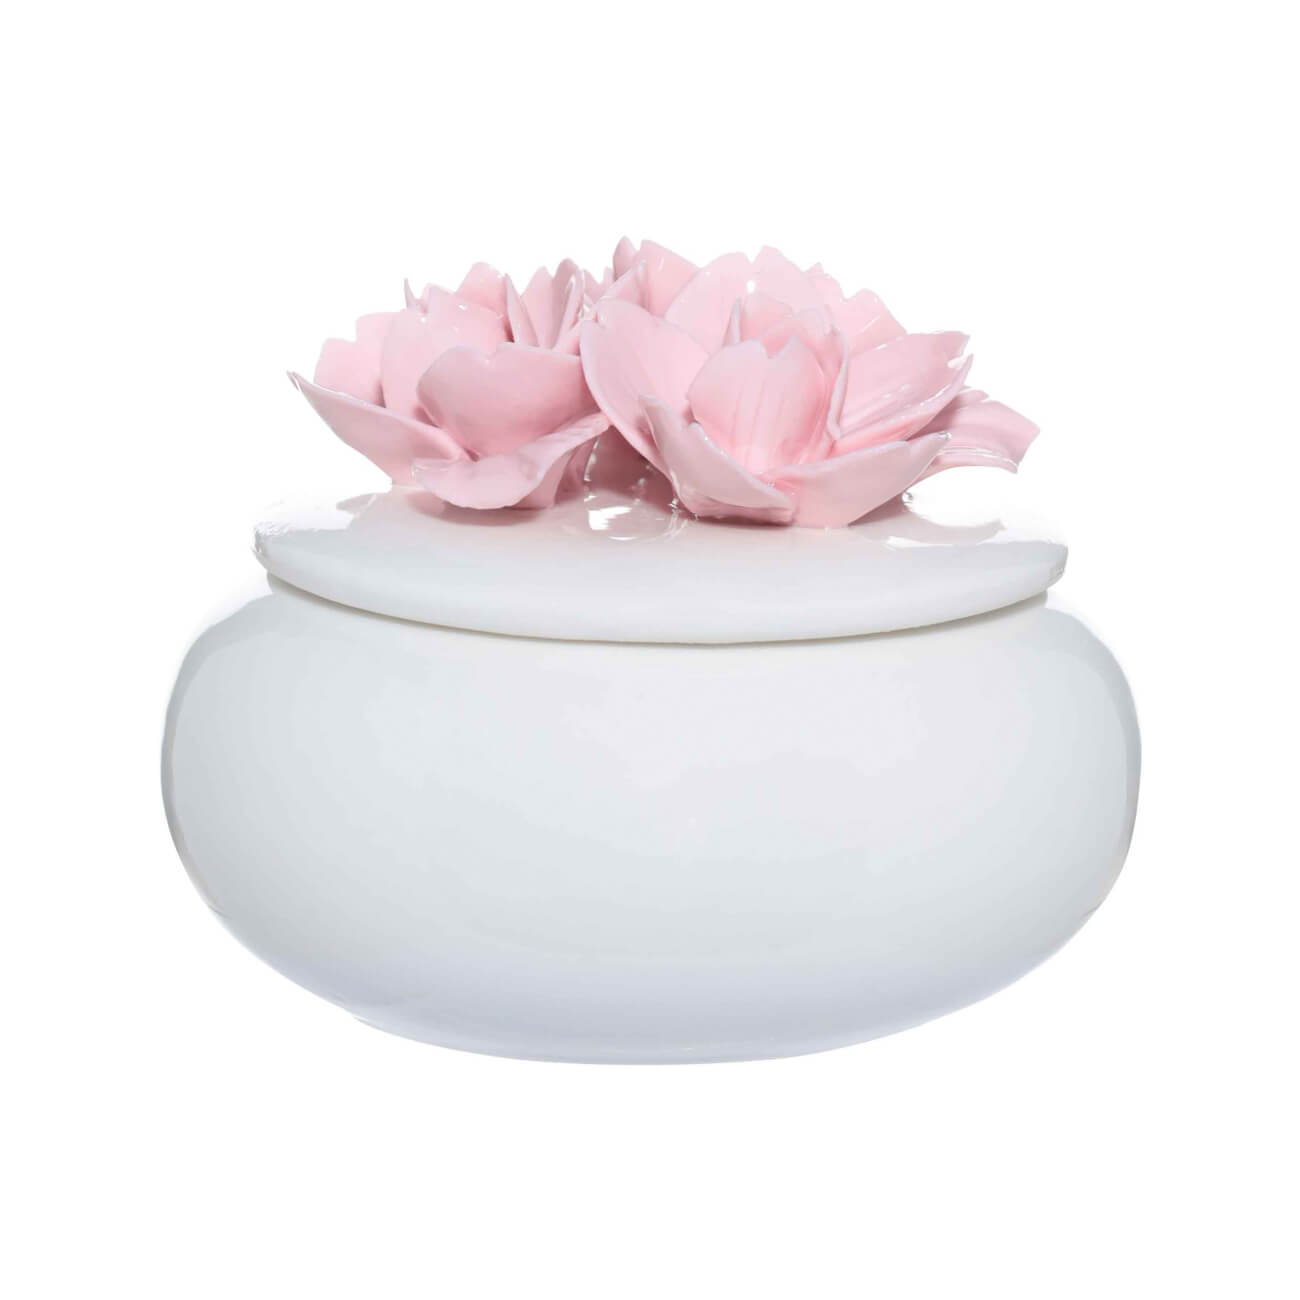 Шкатулка для украшений, 11х9 см, керамика, белая, Цветы, Magnolia